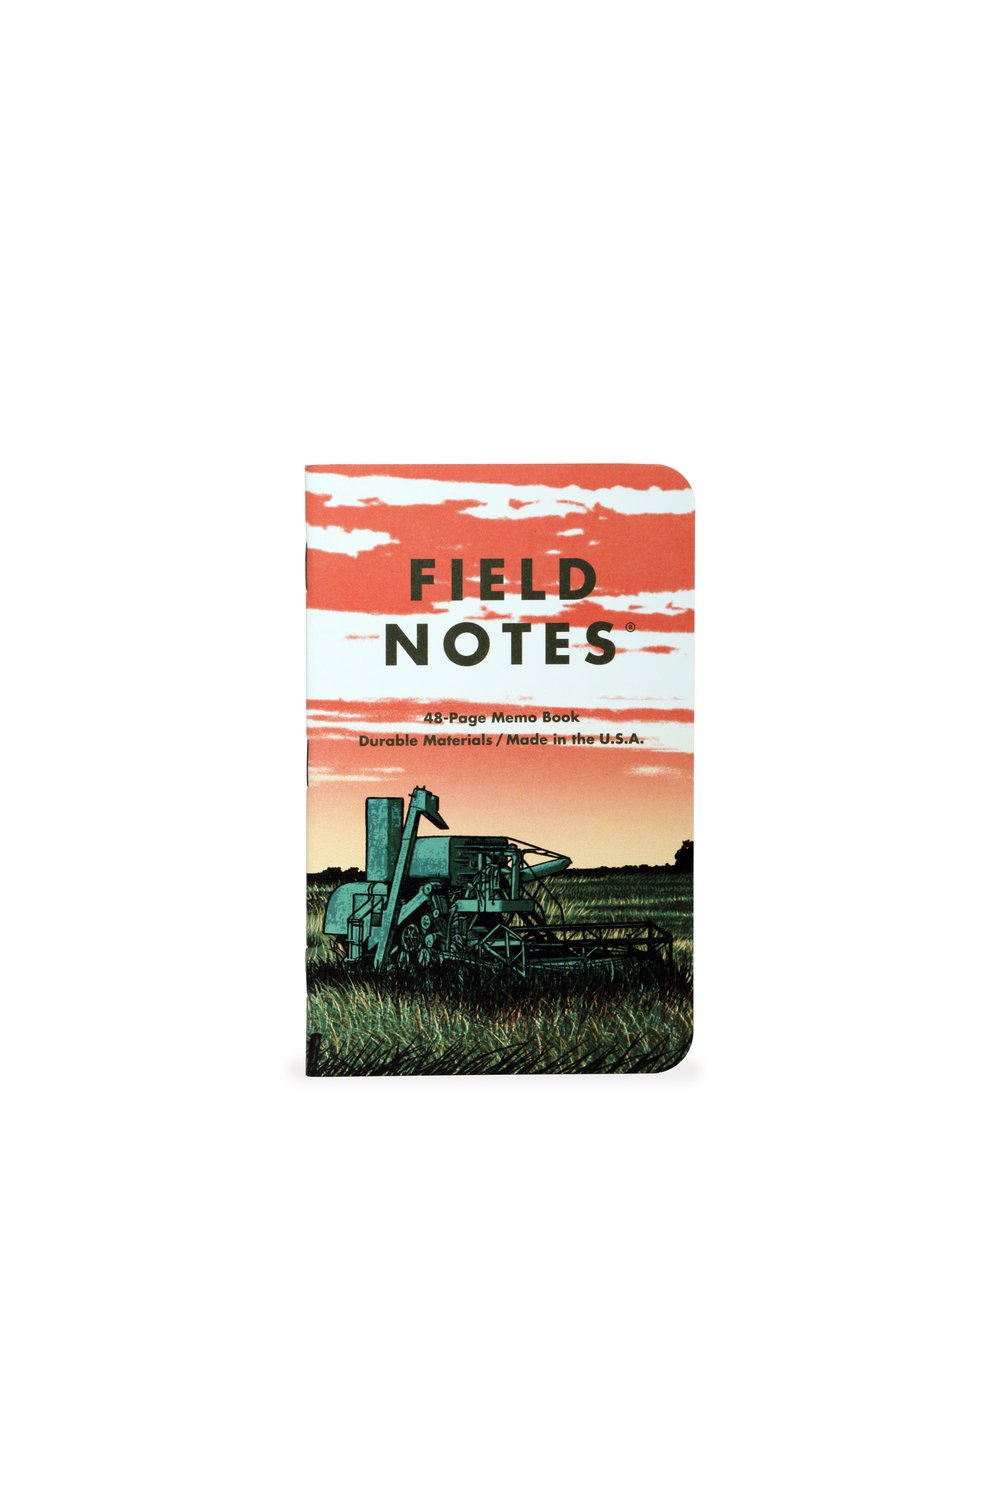 Bucker Trading Co.  Field Notes 56-Week Planner